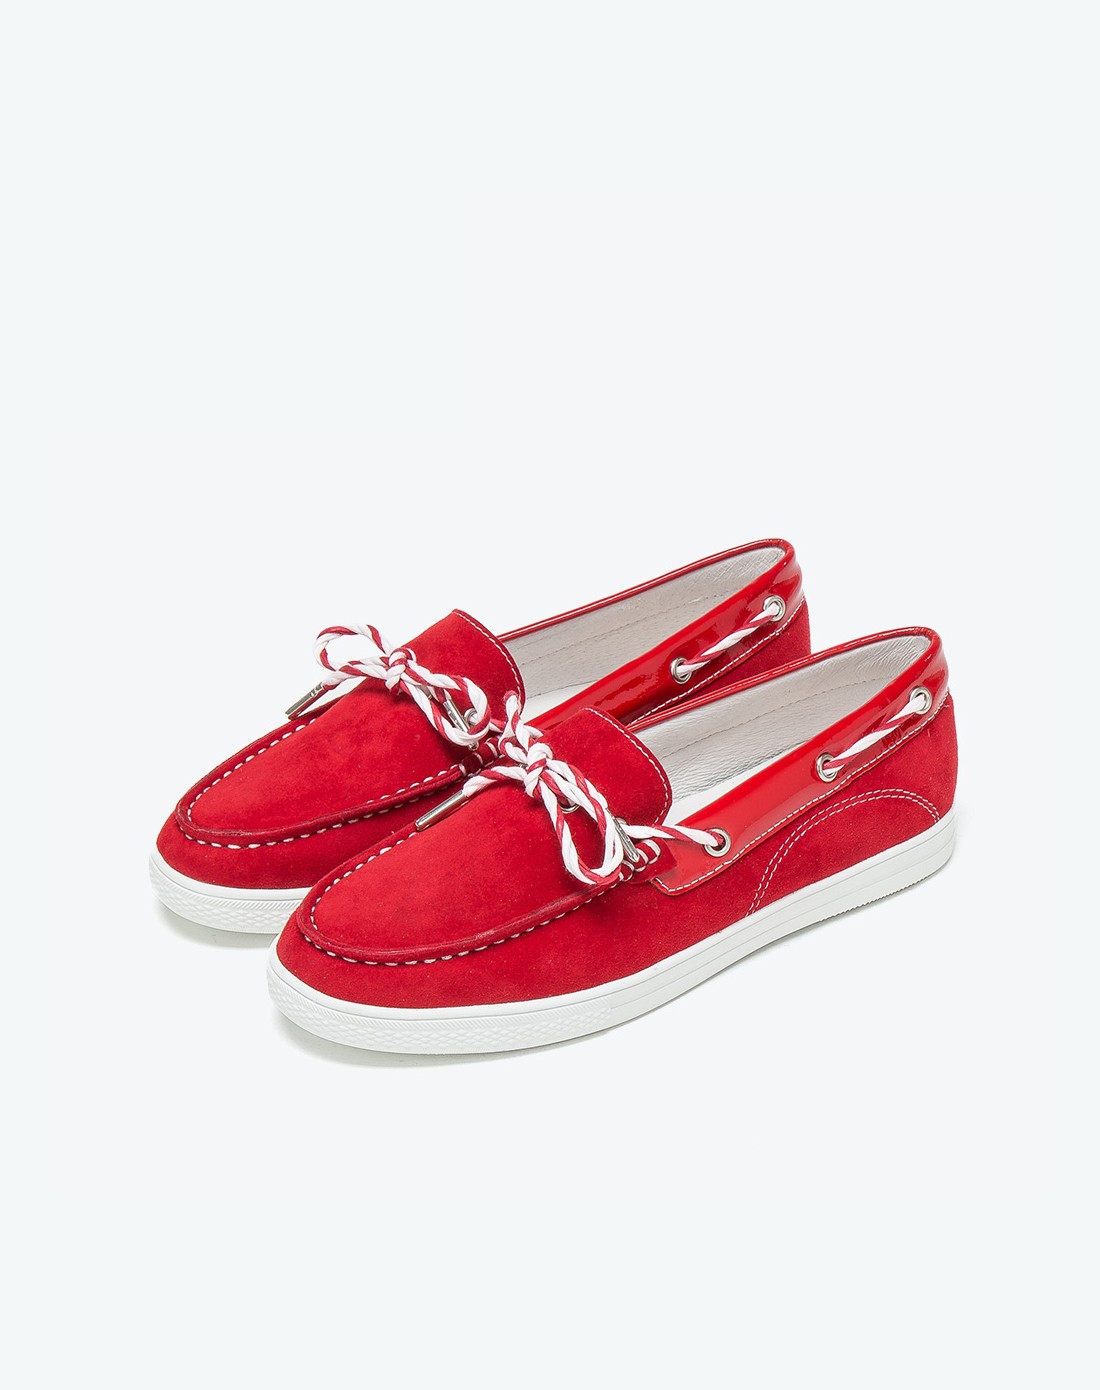 g红色反毛皮舒适女单鞋